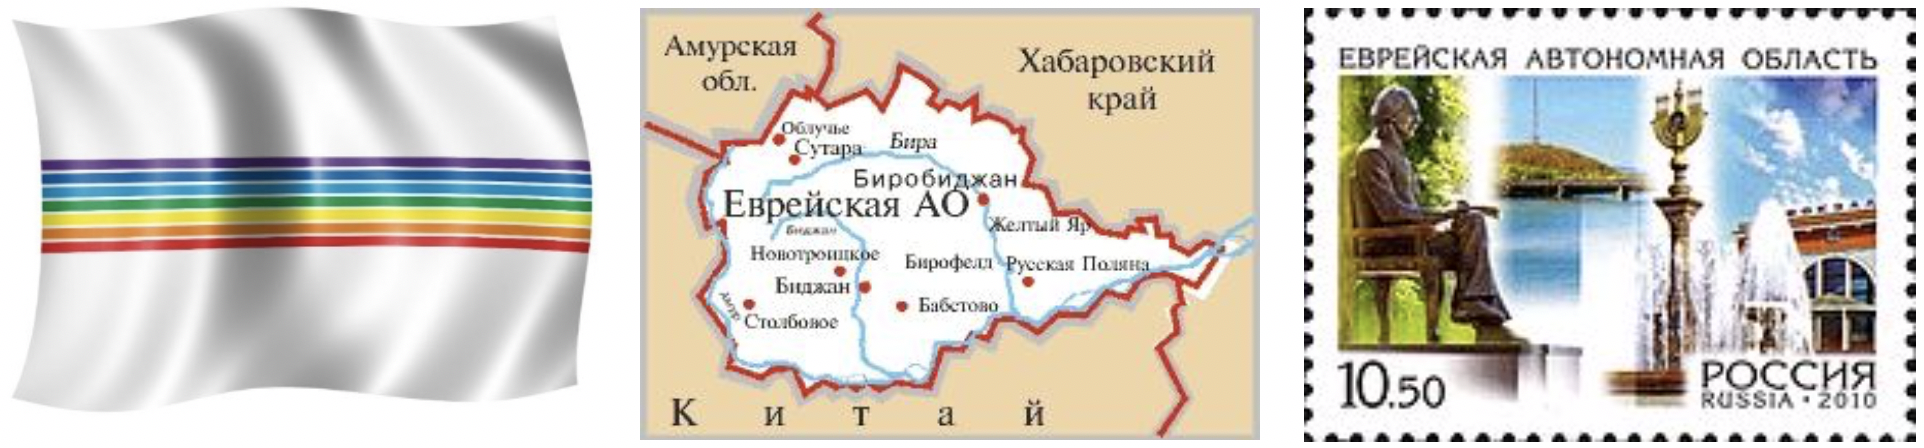 Еврейская автономная область сколько. Еврейская автономная область. Еврейская автономная область России. Флаг Еврейской автономной области. Еврейская автономная область на карте.